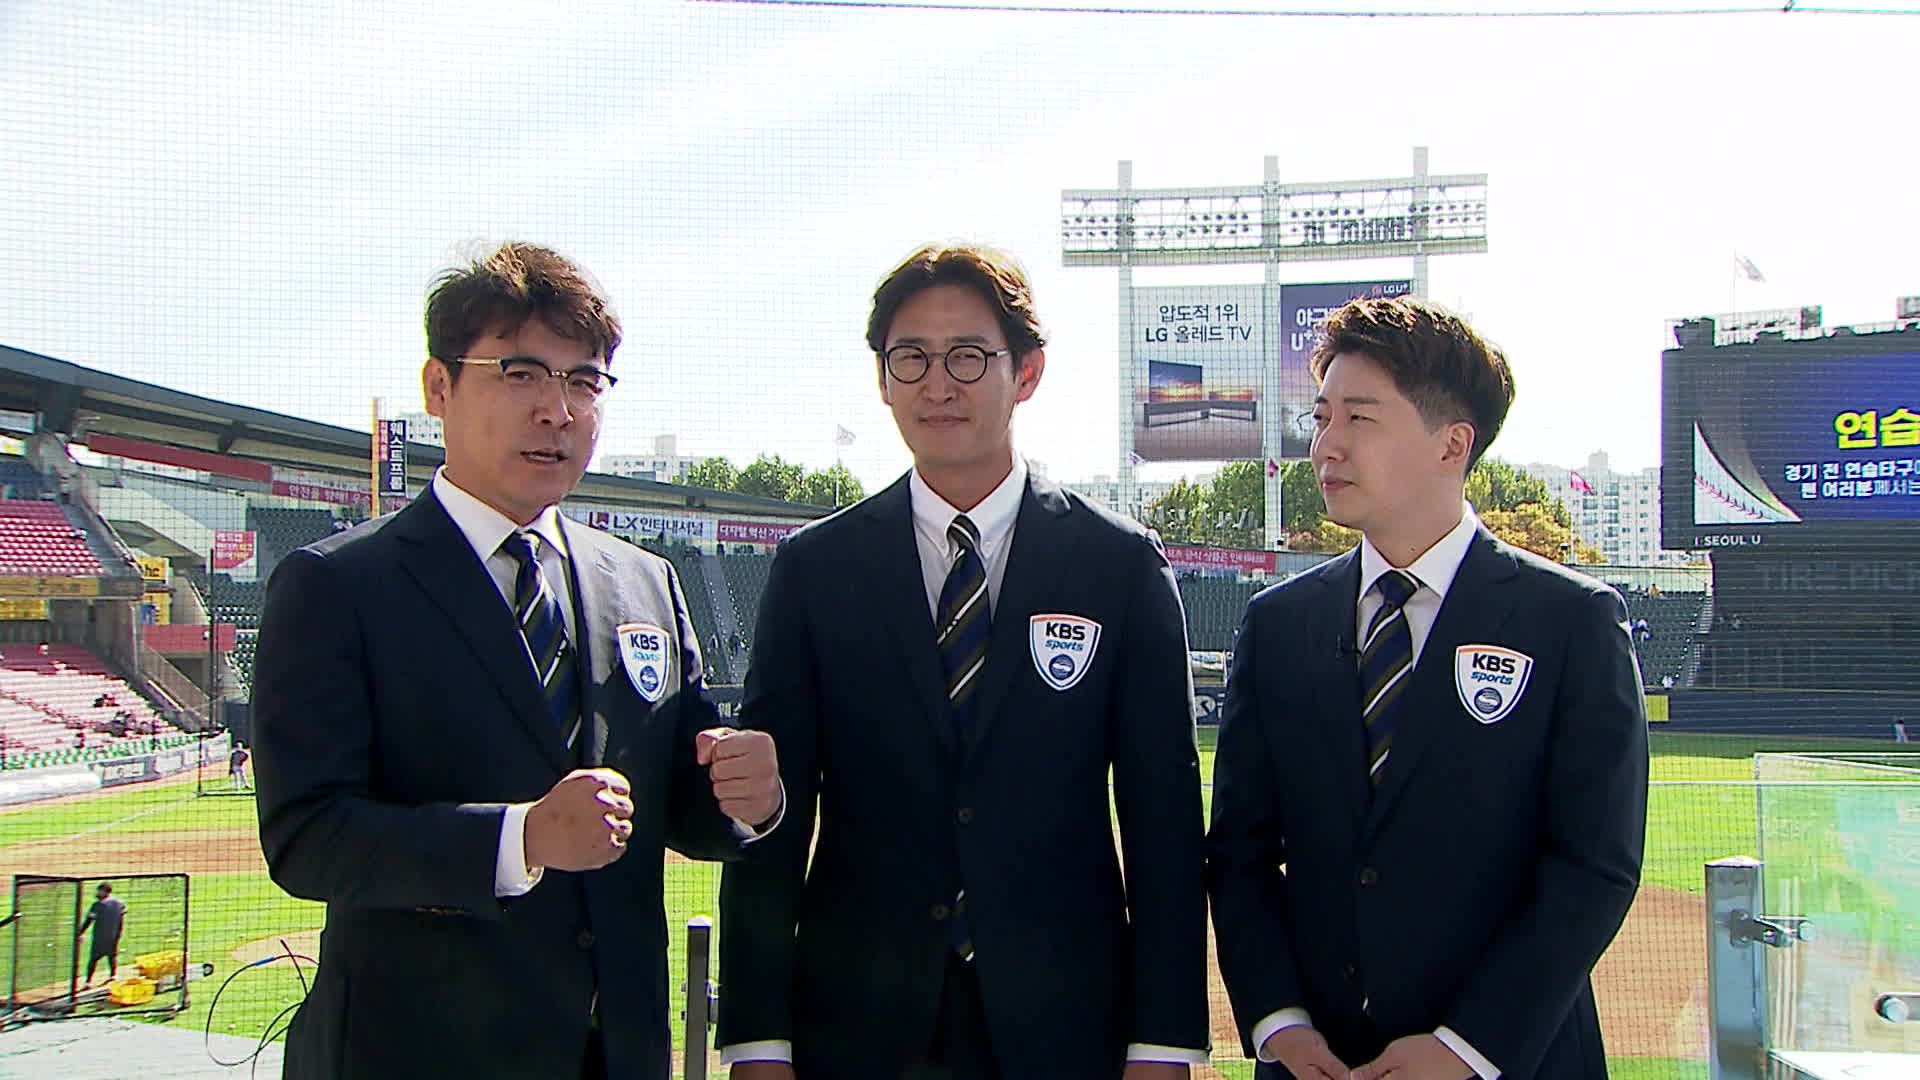 장정석(왼쪽), 박용택(가운데) KBS 야구 해설위원